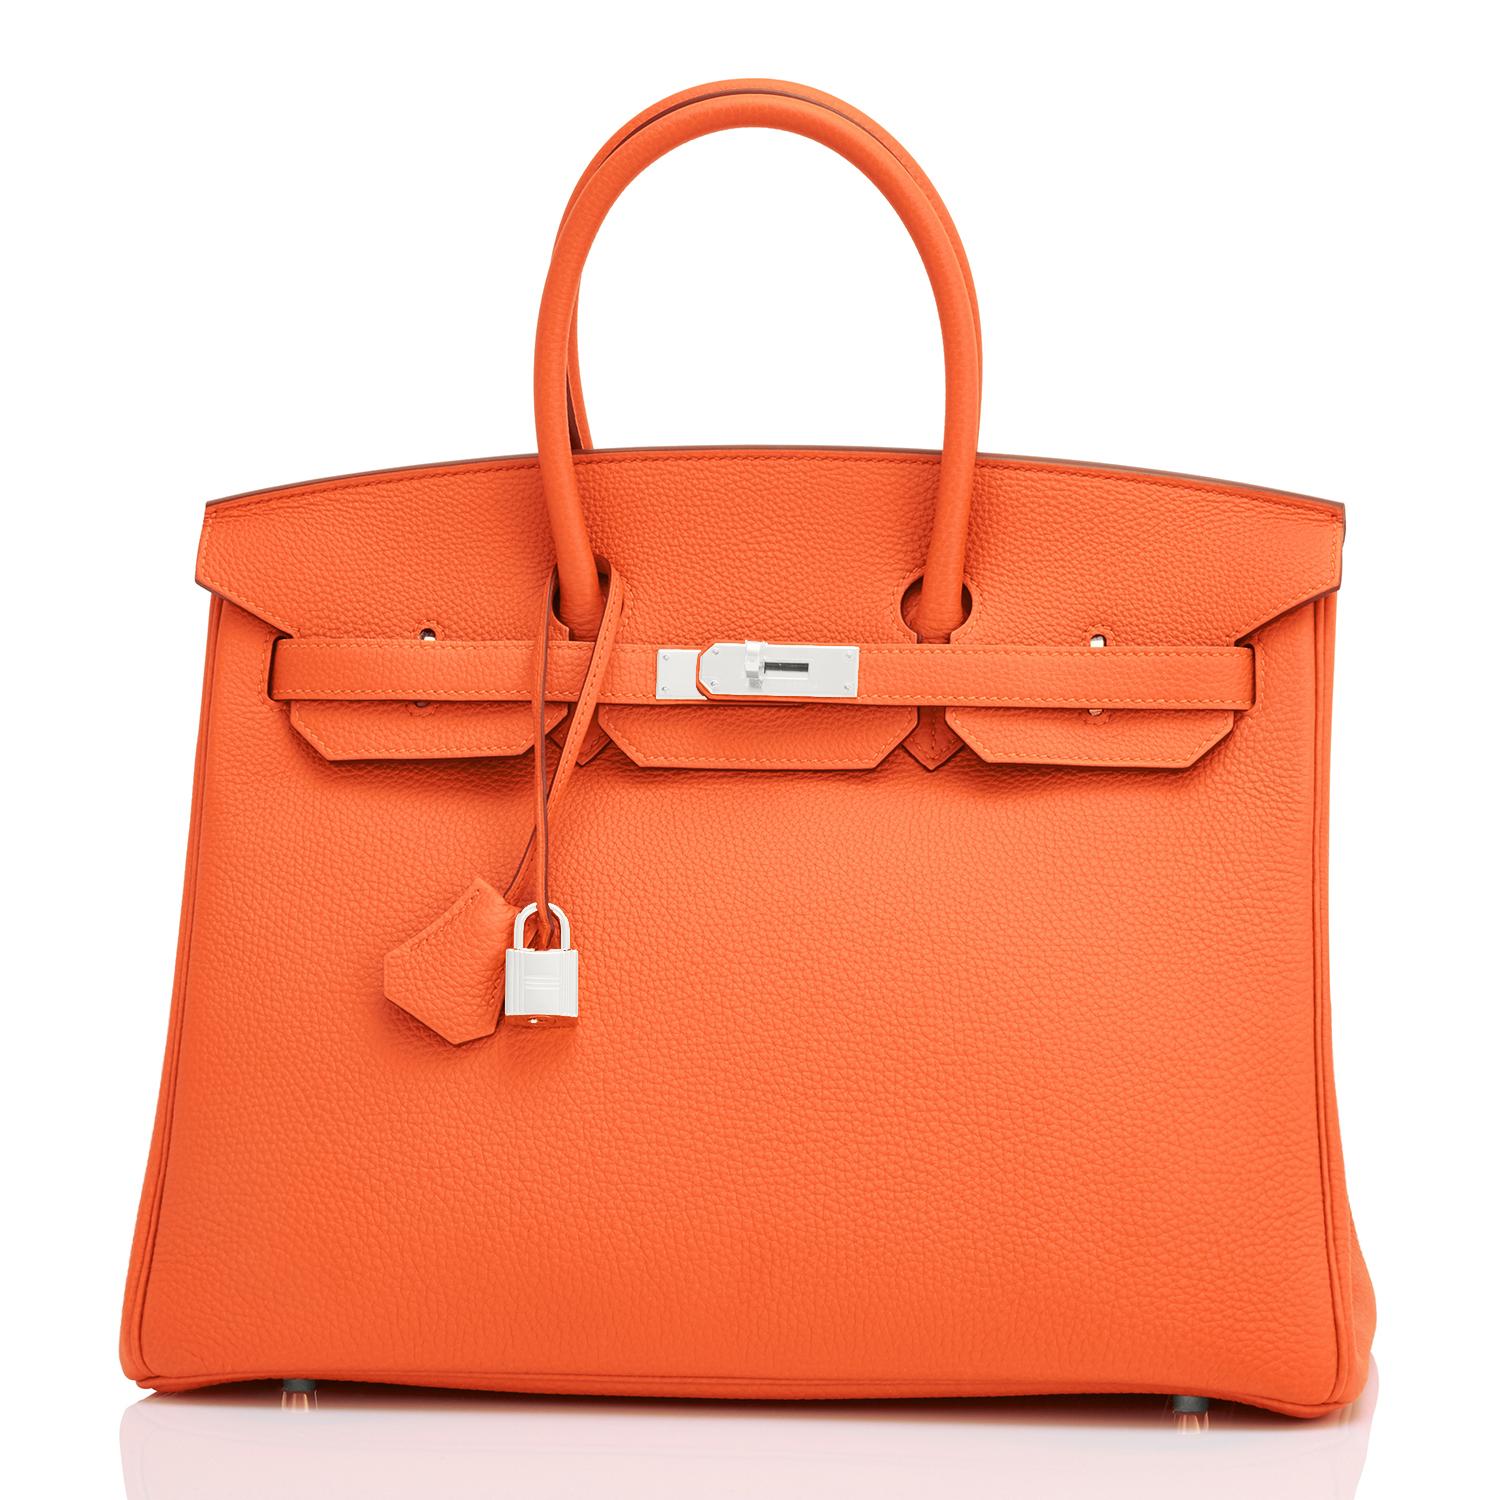 Women's or Men's Hermes Birkin 35 Orange Feu Togo Palladium Hardware Bag NEW